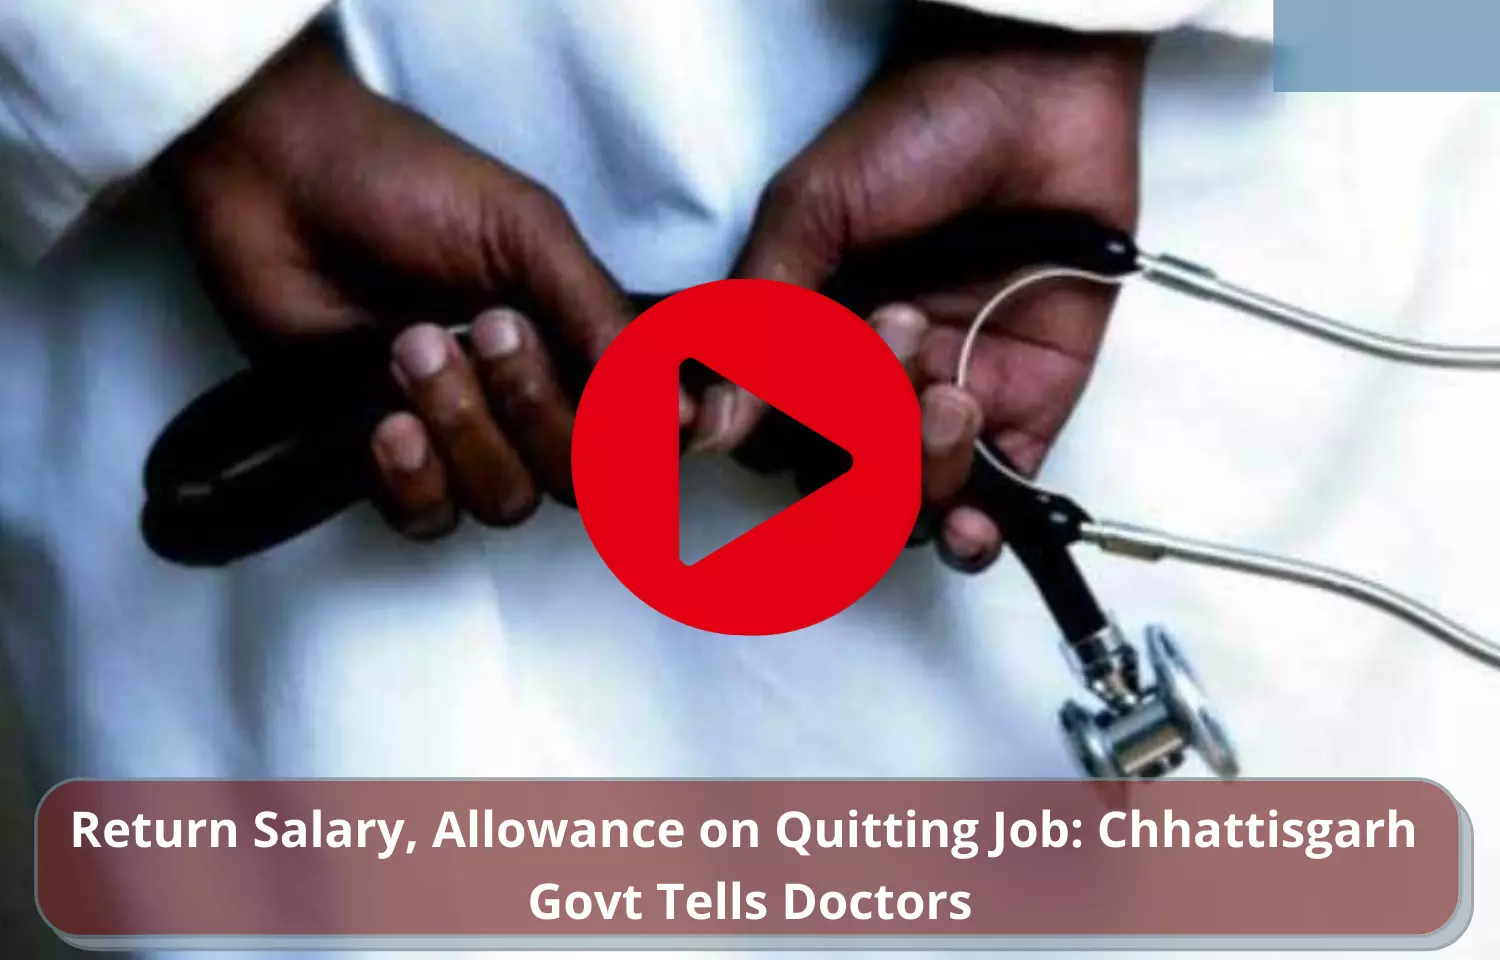 Return Salary, Allowance on quitting job: Chattisgarh Govt tells doctors